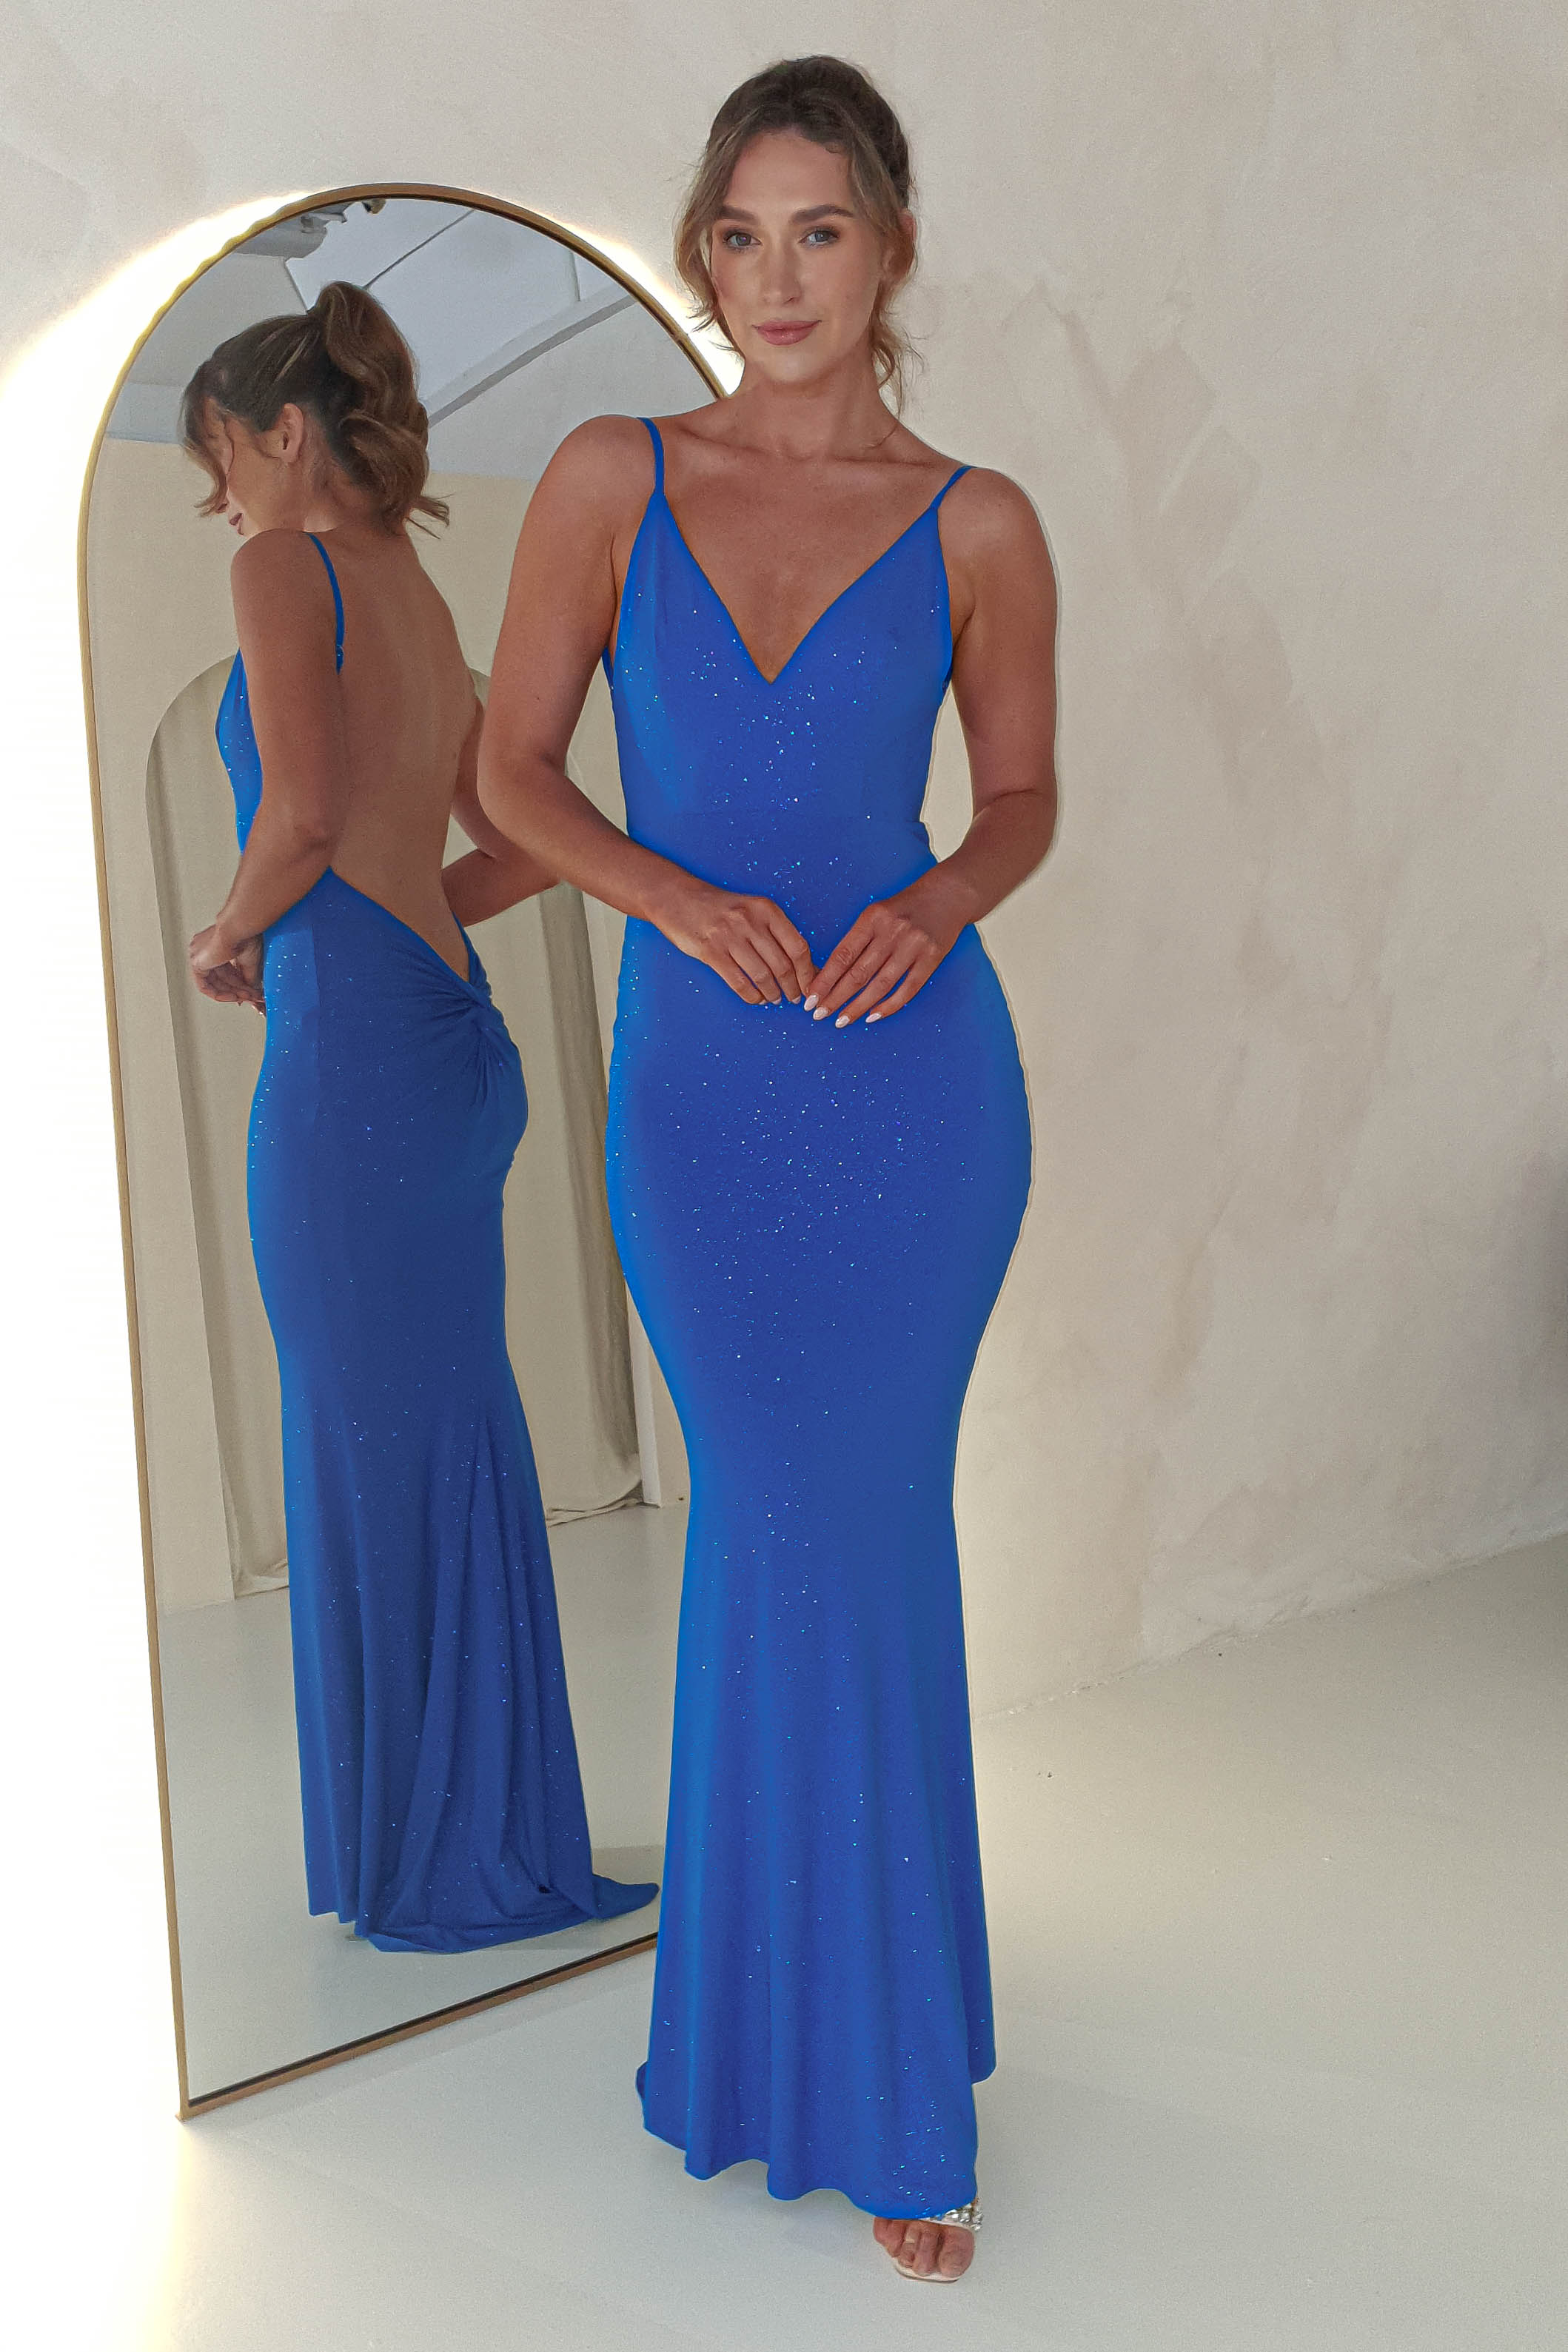 billie-glitter-bodycon-gown-royal-blue-dresses-52305584521557.jpg